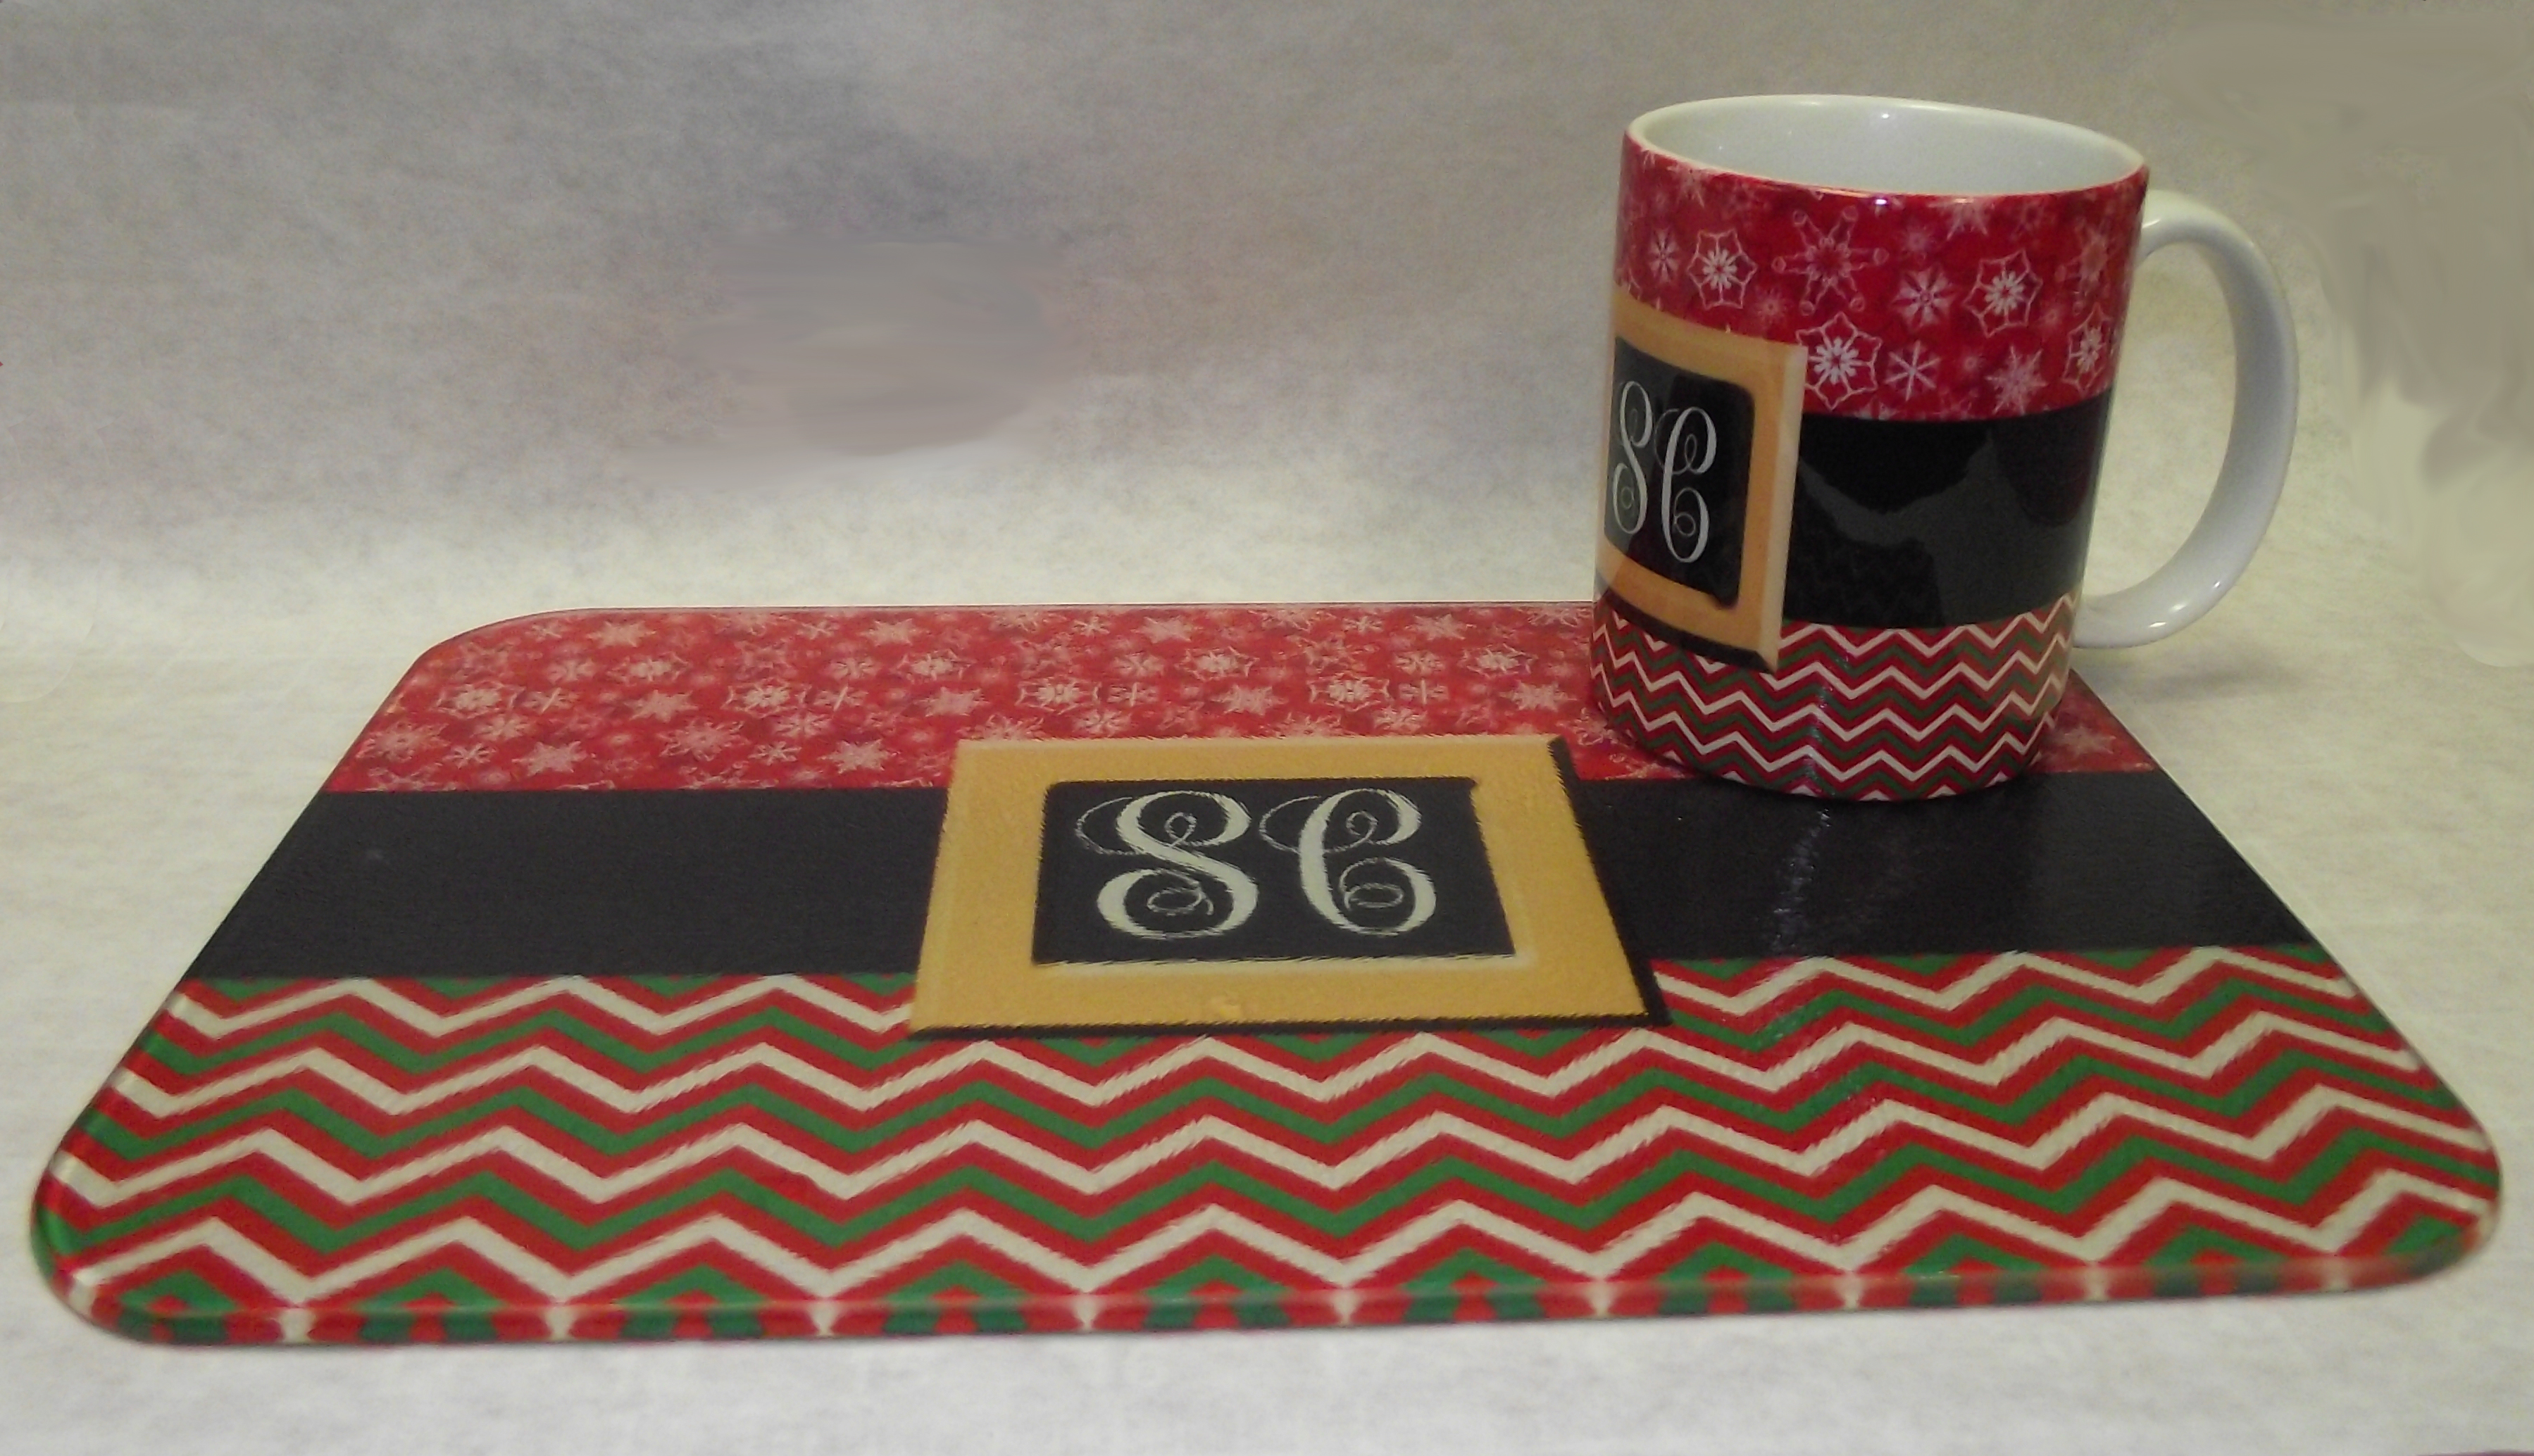 Monogram Santa Mug and cutting board made with sublimation printing